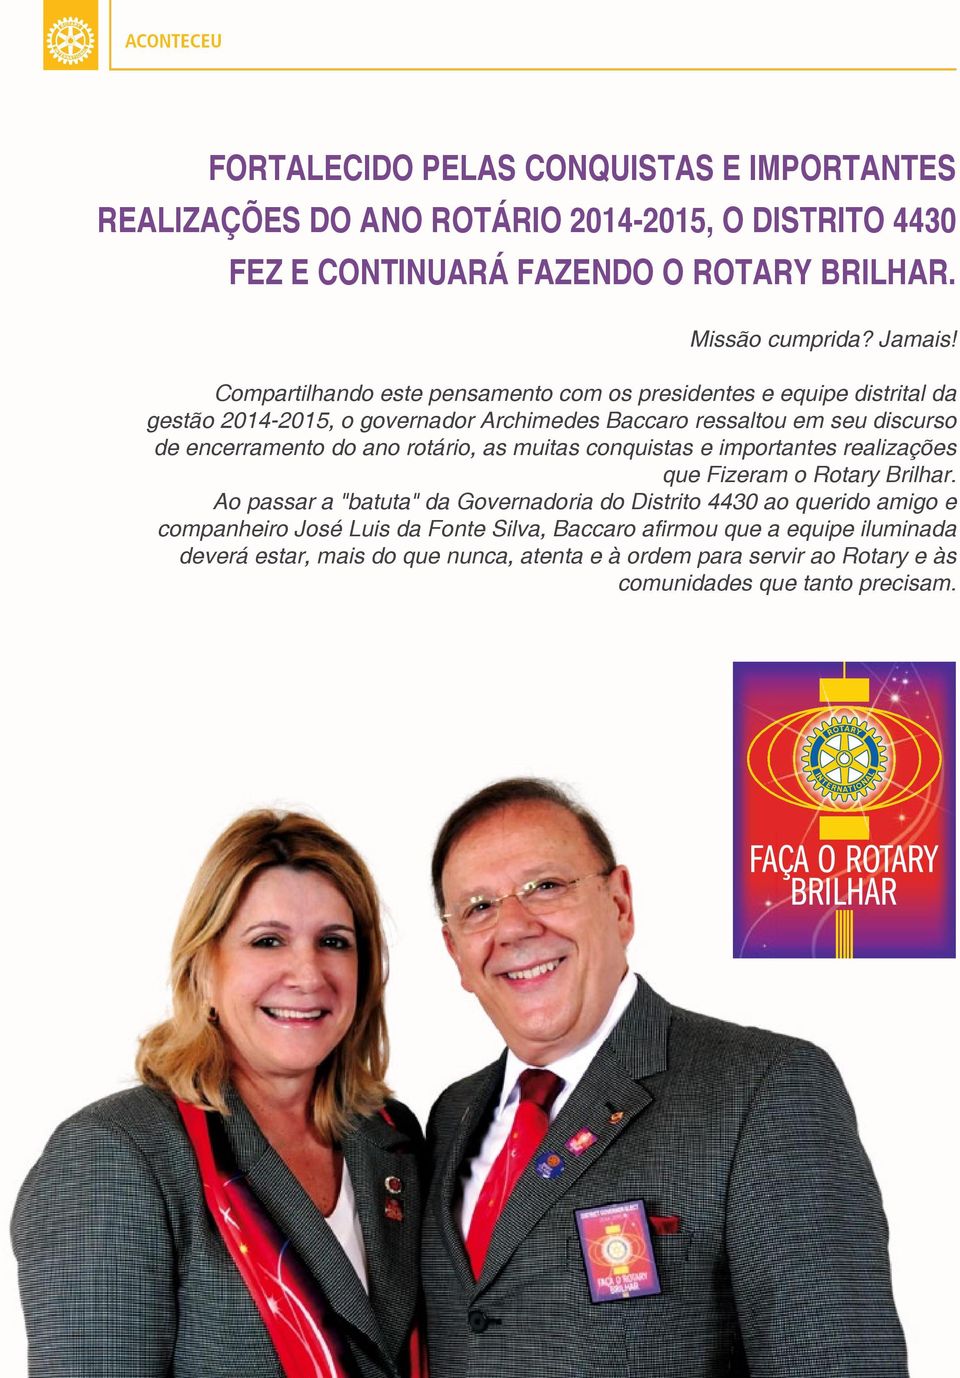 rotário, as muitas conquistas e importantes realizações que Fizeram o Rotary Brilhar.